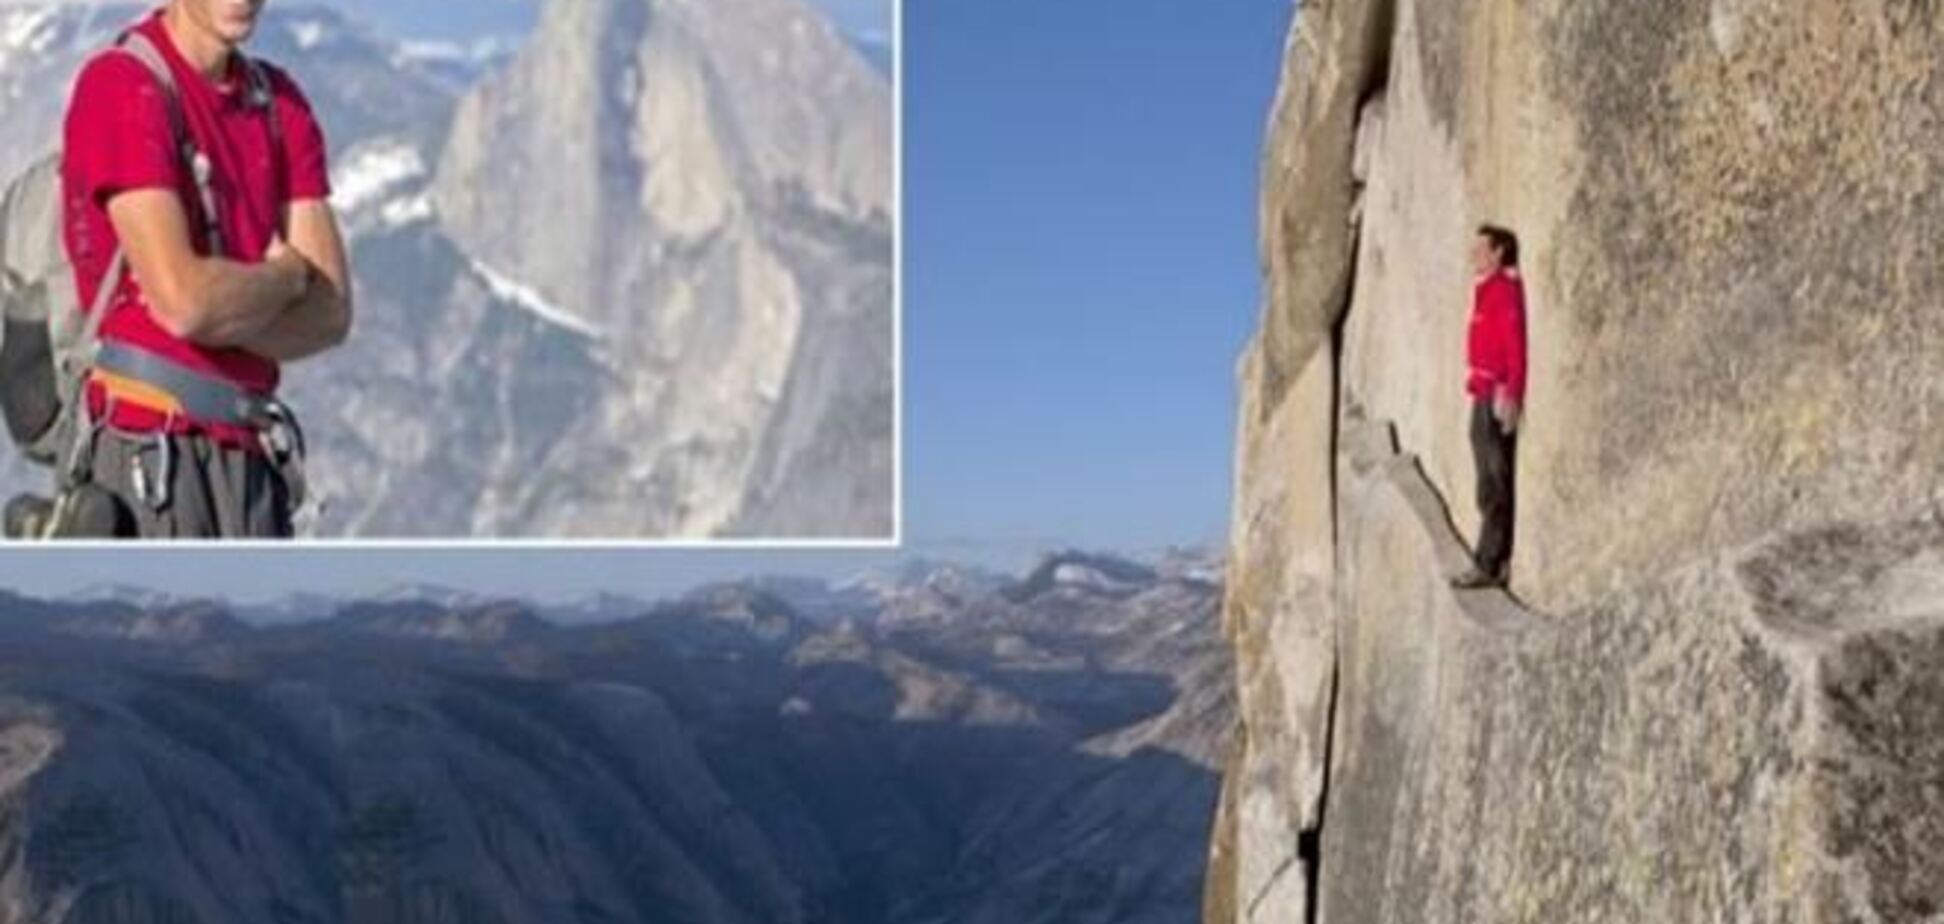 Опубликовано видео подъема на 450-метровую скалу без страховки